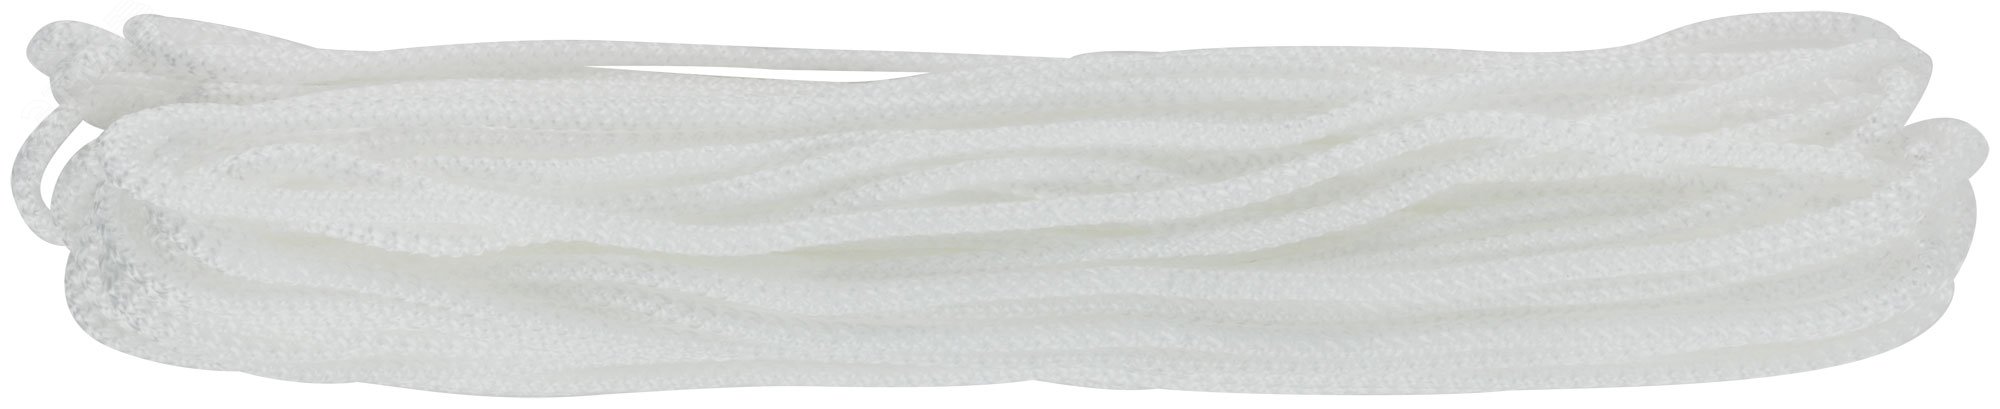 Шнур вязаный полипропиленовый без сердечника 5 мм х 20 м, р/н= 52 кгс 68355 FIT РОС - превью